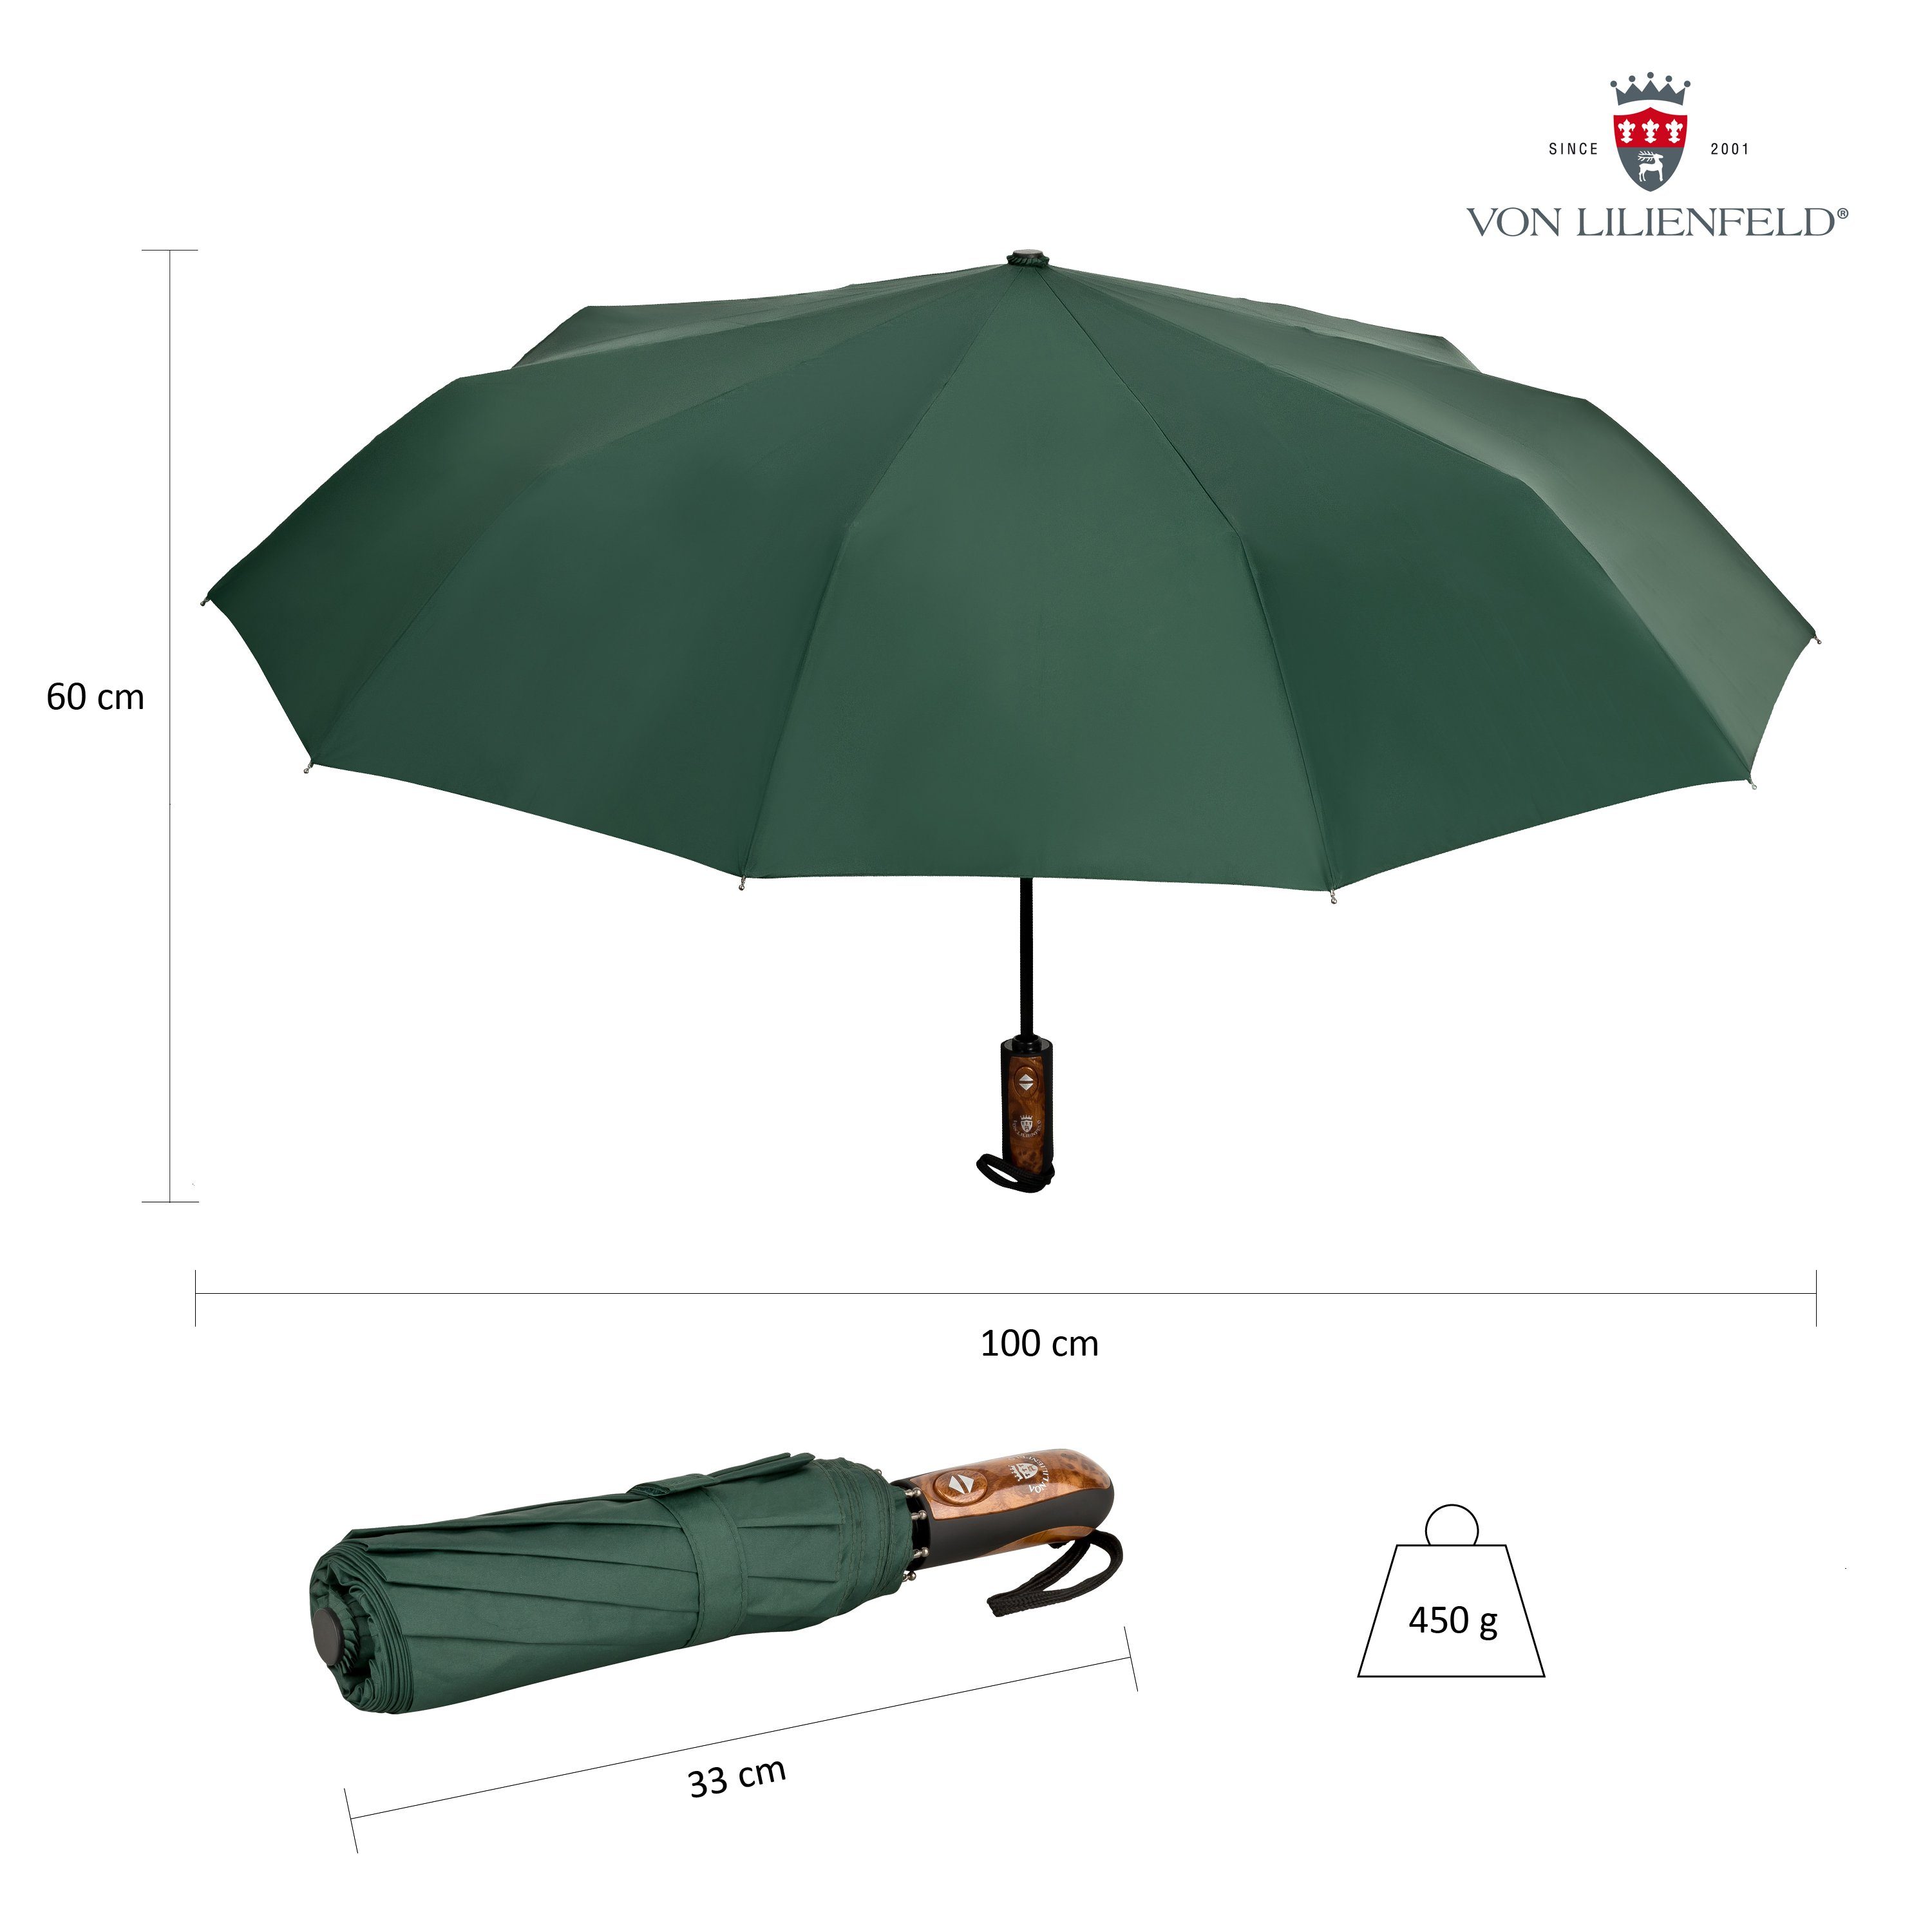 mit Lilienfeld schnelltrocknend Auf-Zu-Automatik Taschenregenschirm Schirm von Clark wasserabweisend, Teflonbeschichtung, extrem Reise-Etu dunkelgrün